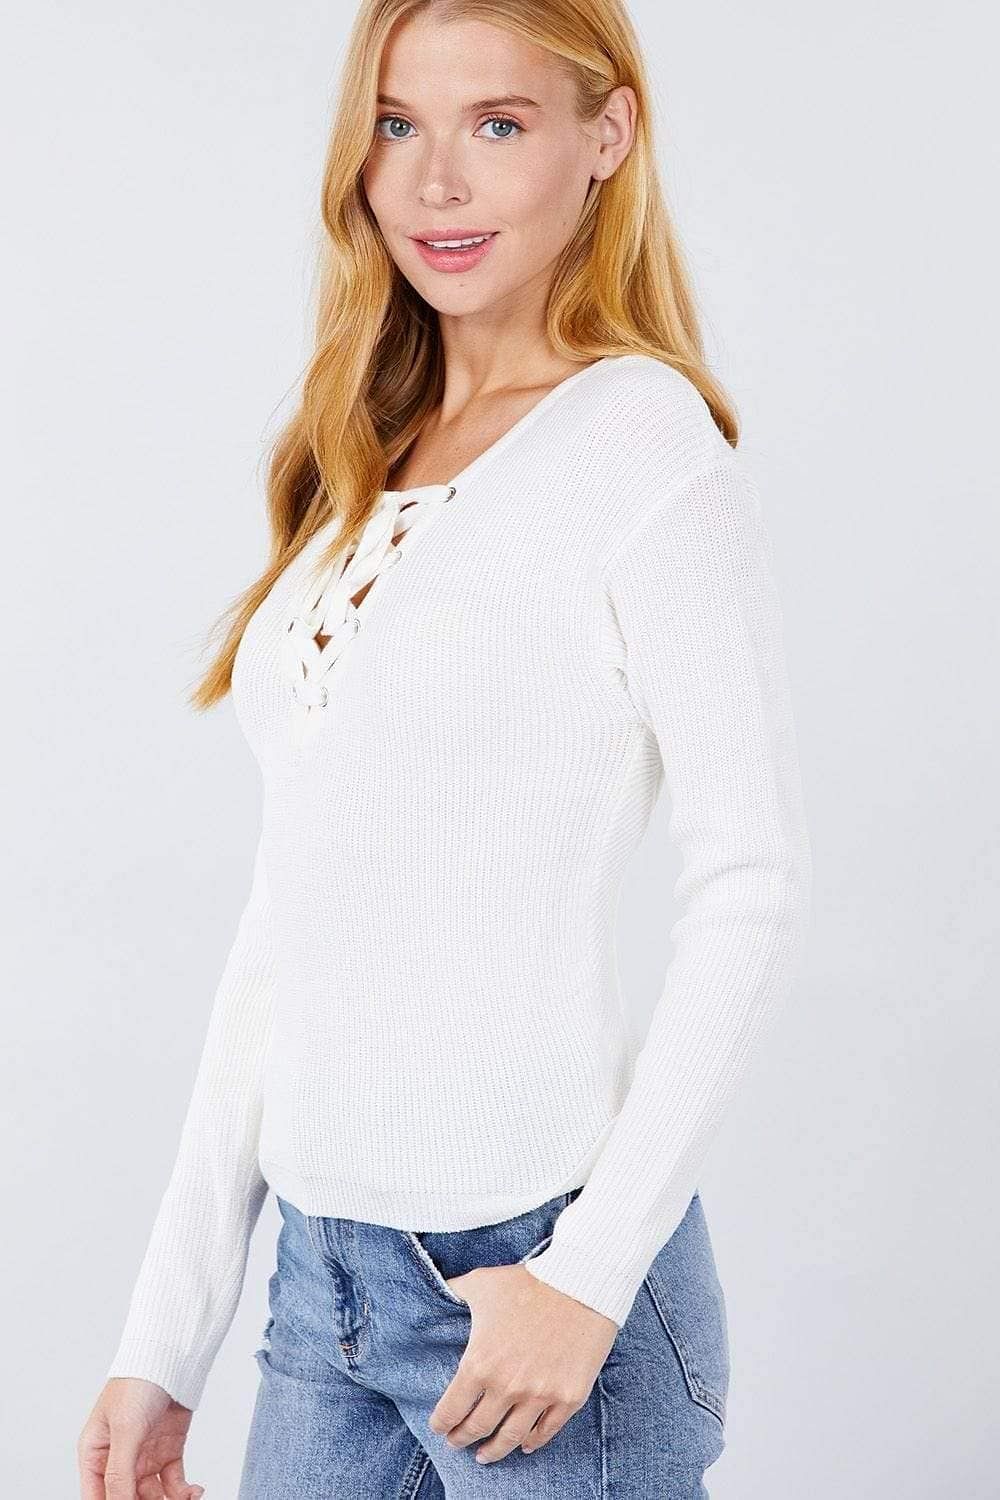 White Eyelet V-Neck Sweater - Shopping Therapy, LLC 